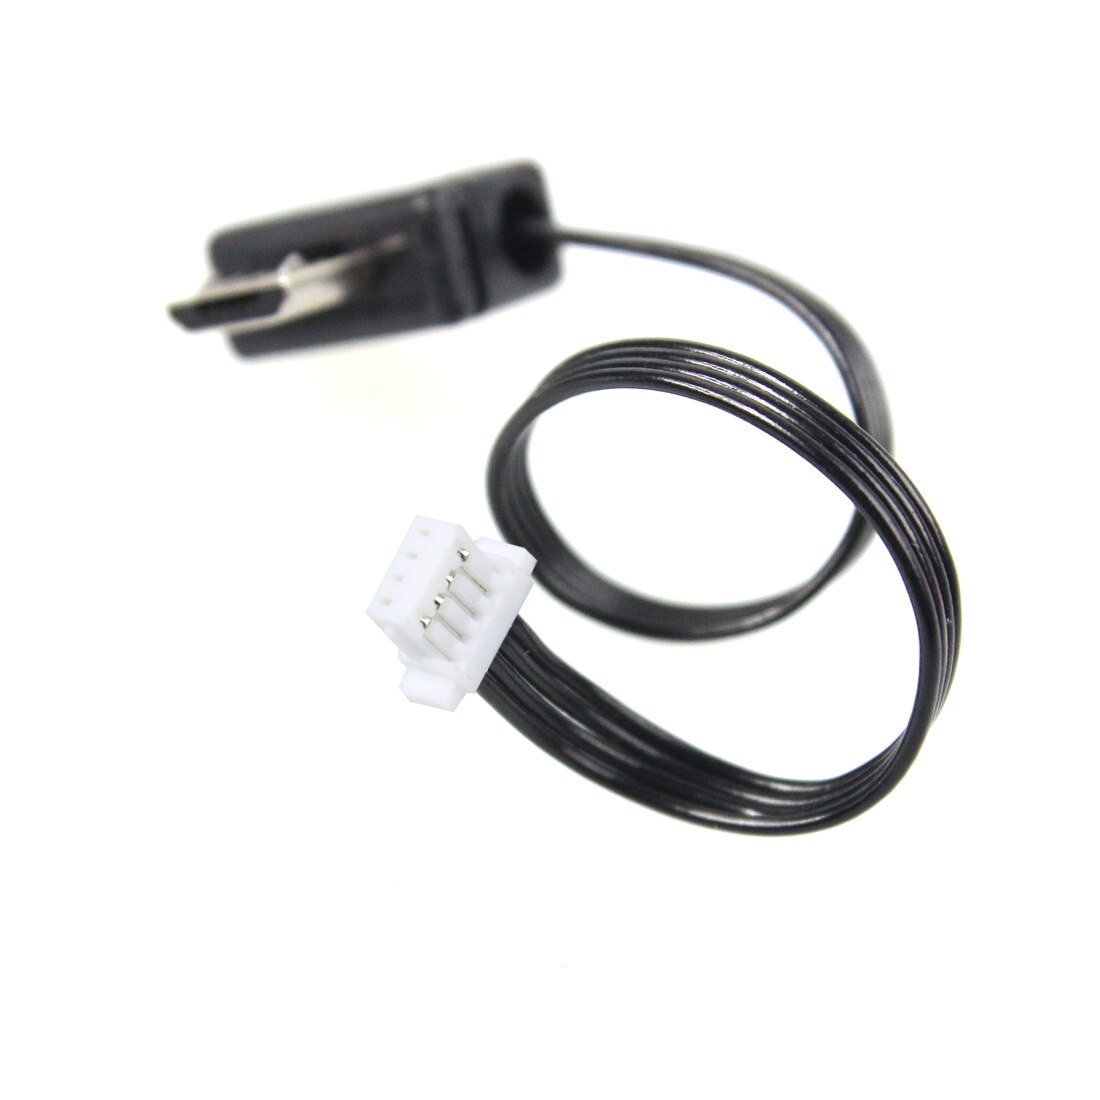 Кабель подключения Zhiyun GoPro Charge Cable (Mini USB) AV 90mm (B000102) цена и фото